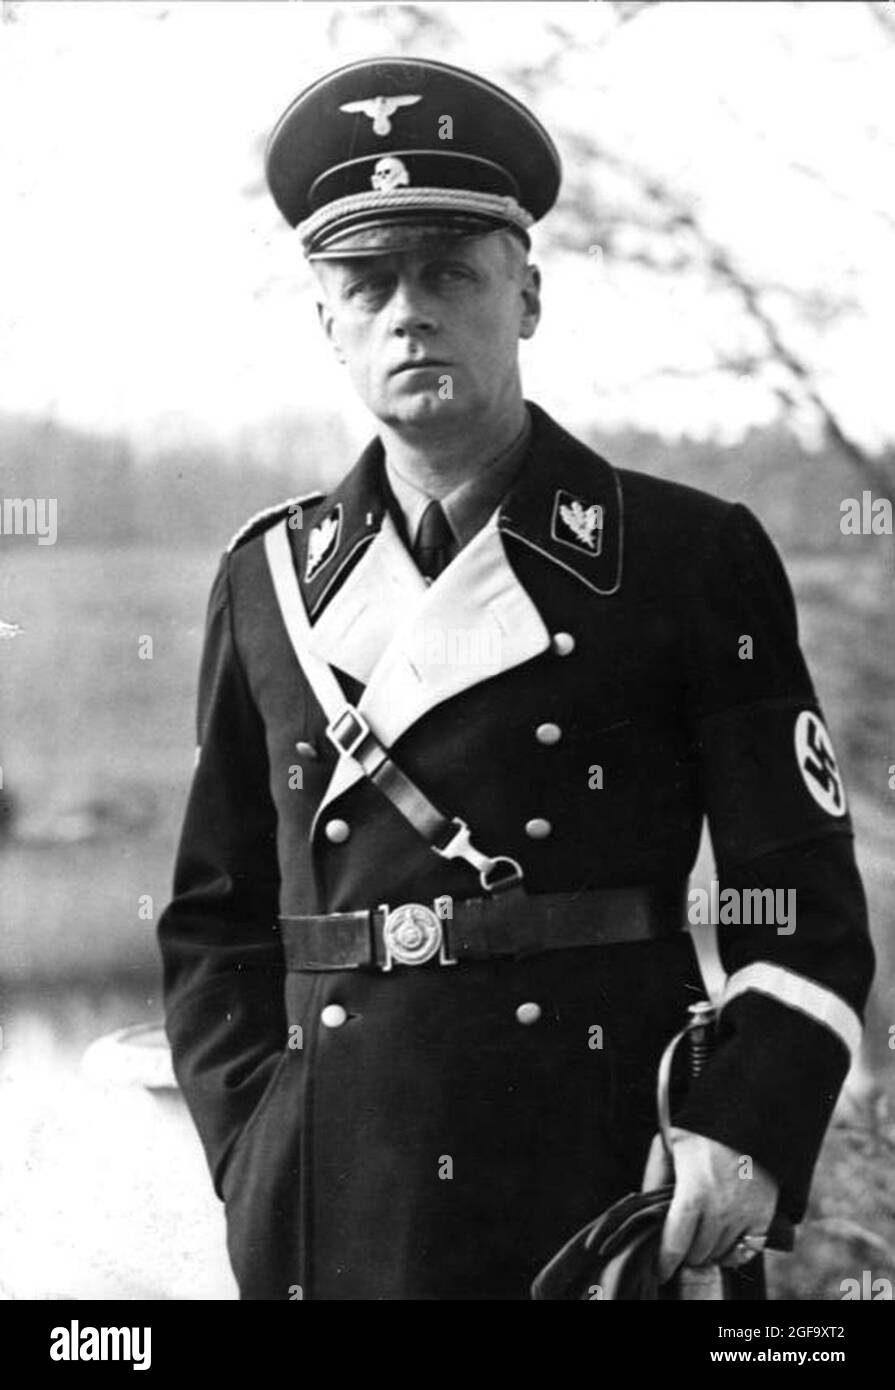 Le dirigeant nazi et homme politique Joachim von Ribbentrop. Il était ministre nazi des Affaires étrangères (ministre des Affaires étrangères). Il a été capturé en 1945, a essayé et pendu à Nuremberg en 1946. Crédit: Bundesarchiv allemand Banque D'Images